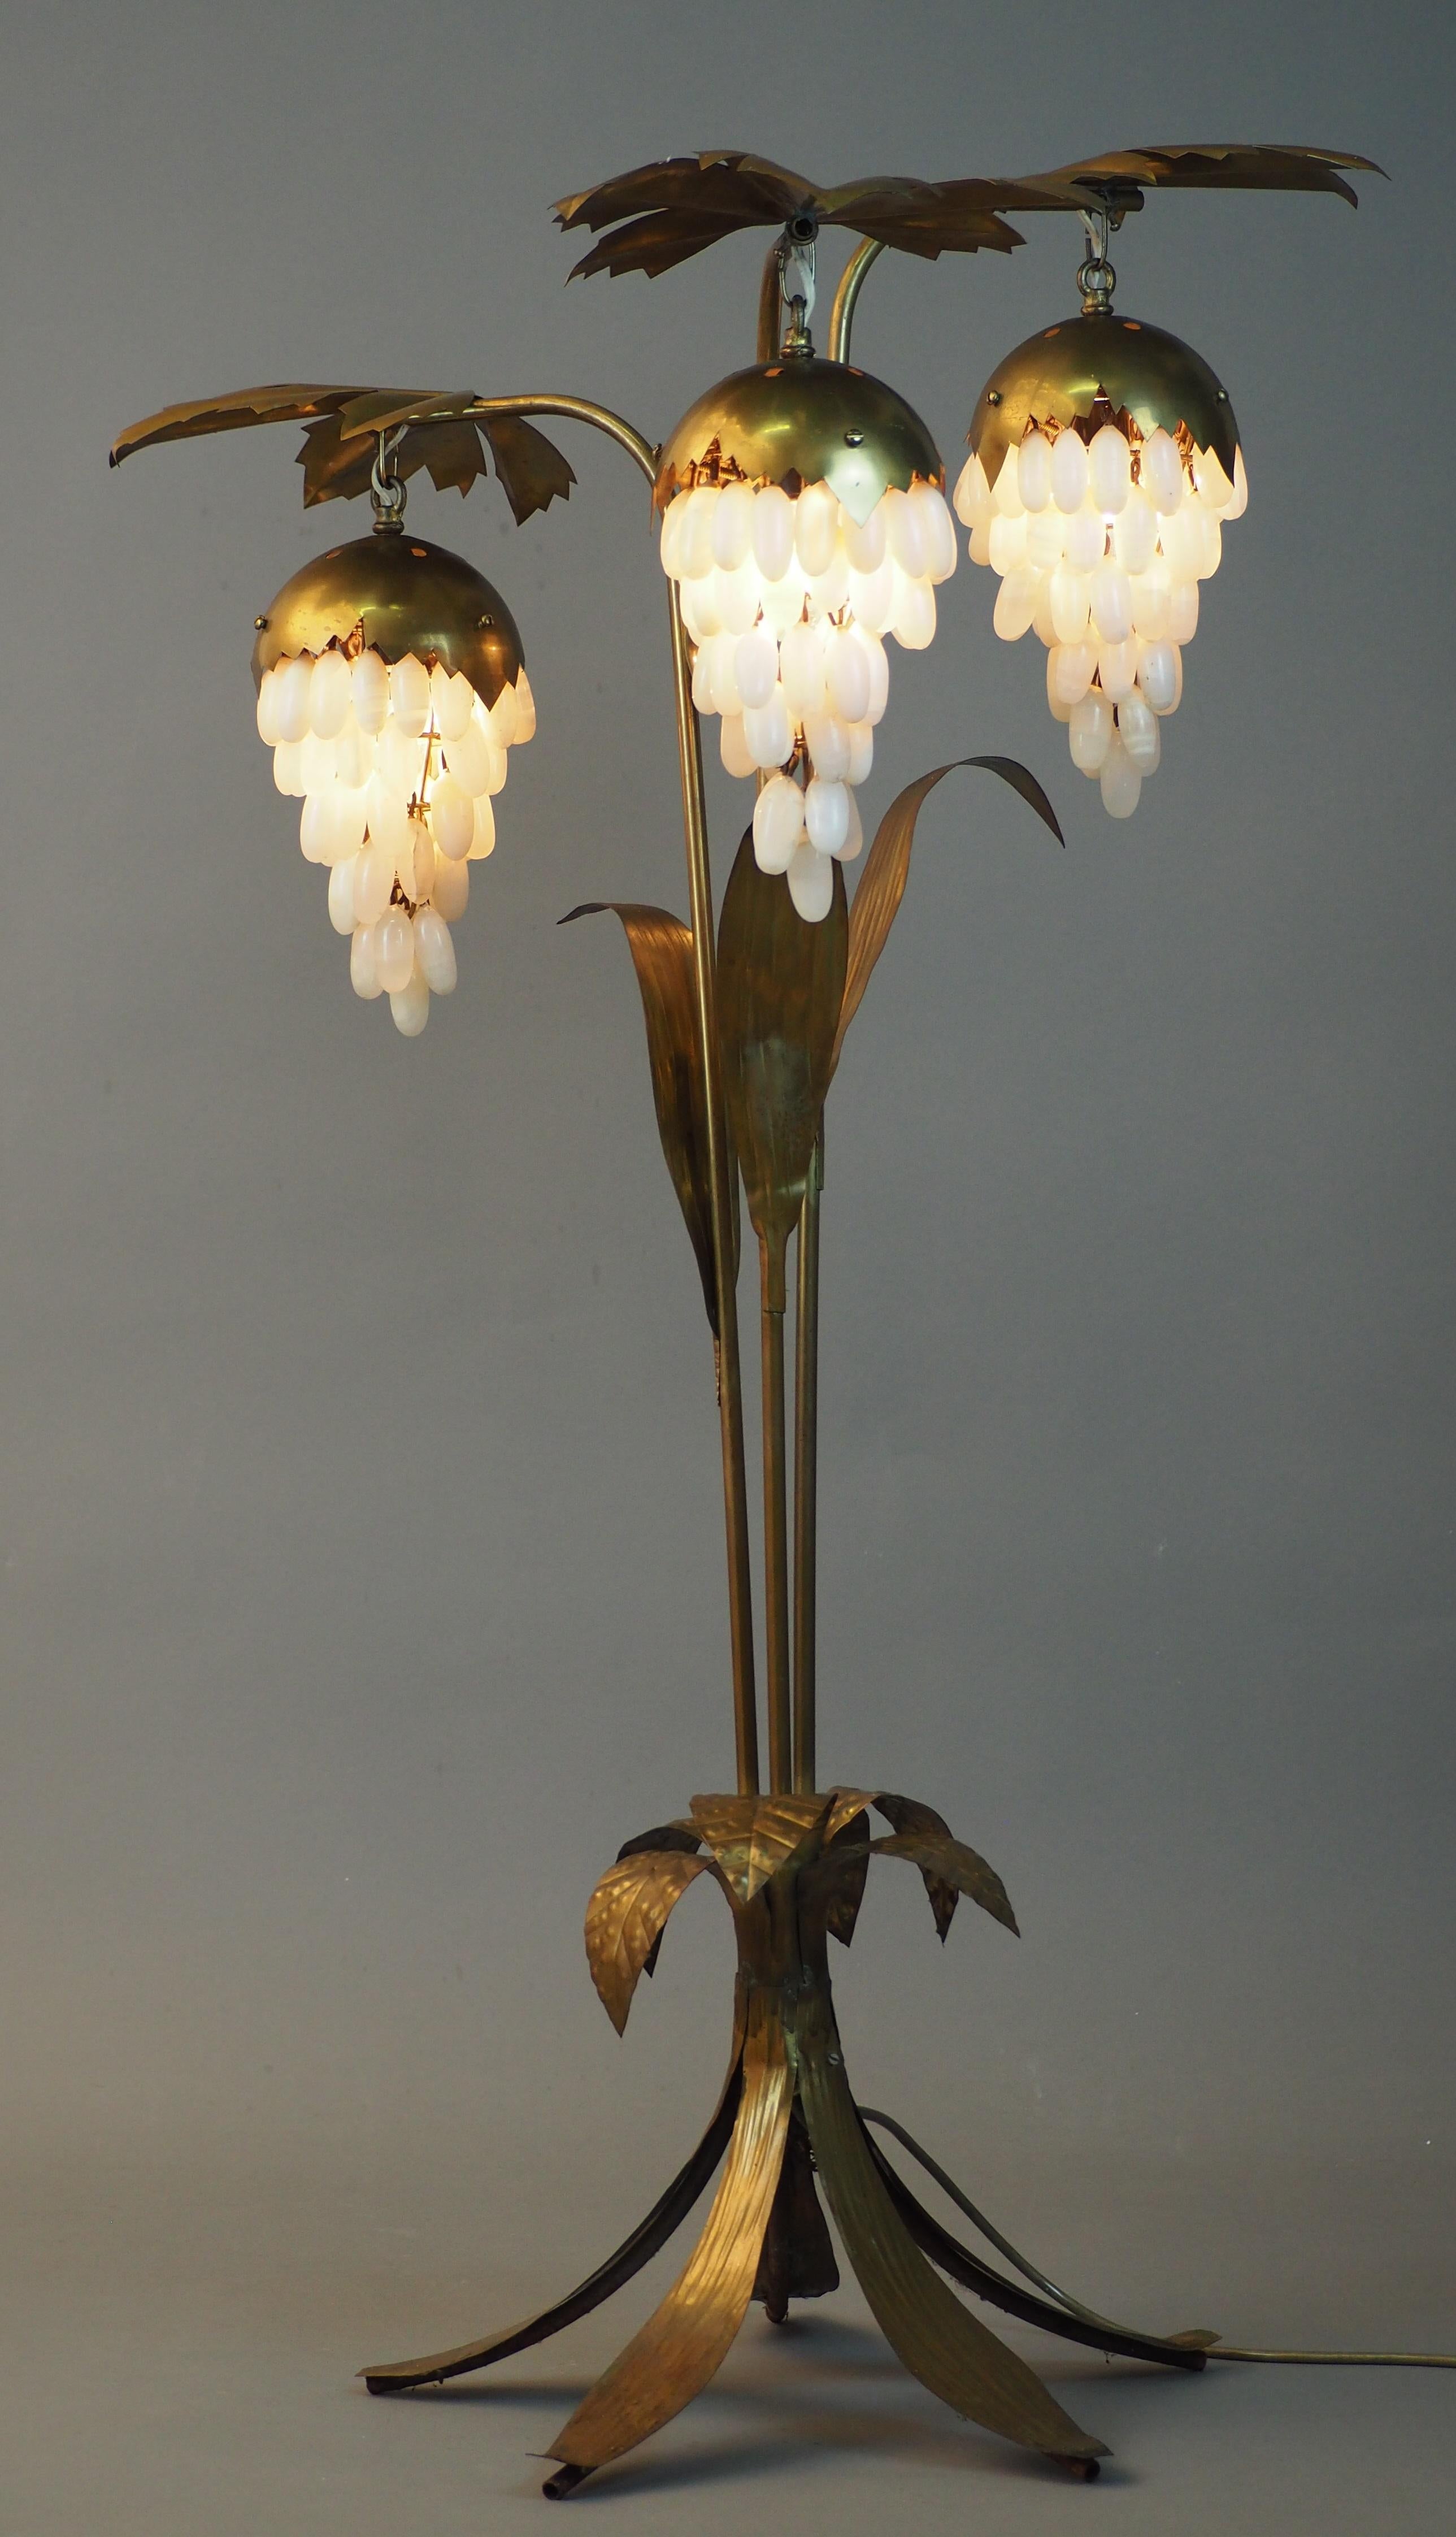 Eine wunderbare italienische oder deutsche Stehlampe mit originalen Alabastertraubenschirmen.
Ein sehr interessantes Design, das in den 1950er Jahren handgefertigt wurde.
Lampenfassung: 3 x e14
Neu verkabelt für US-Standards.